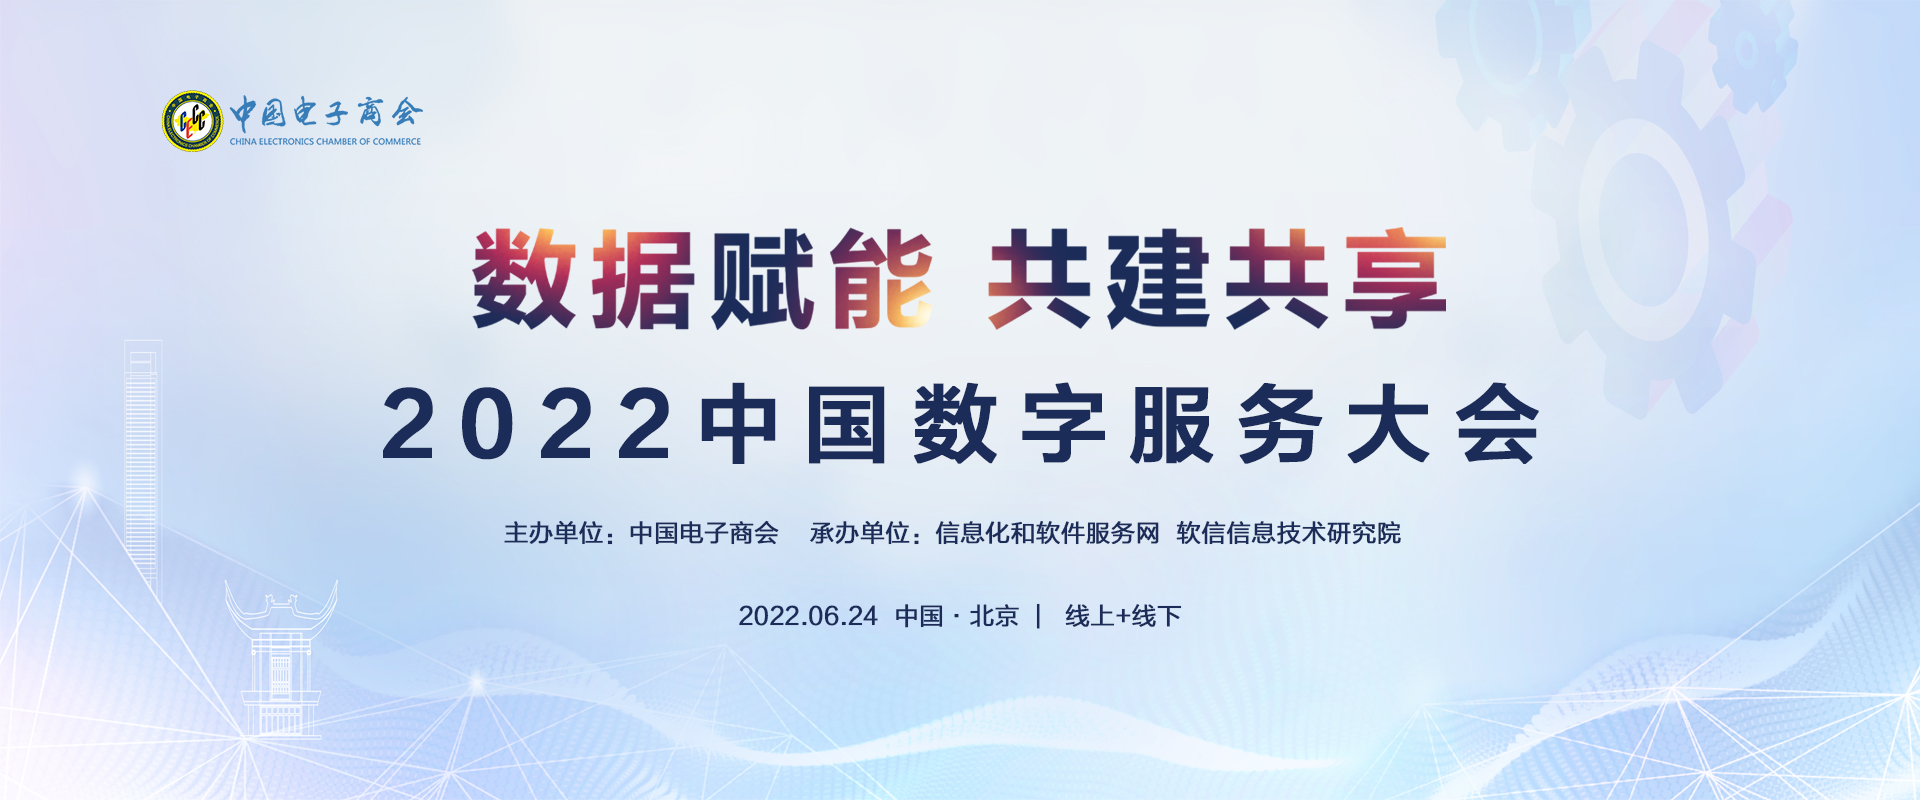 会议预告|2022中国数字服务大会将于6月24日召开